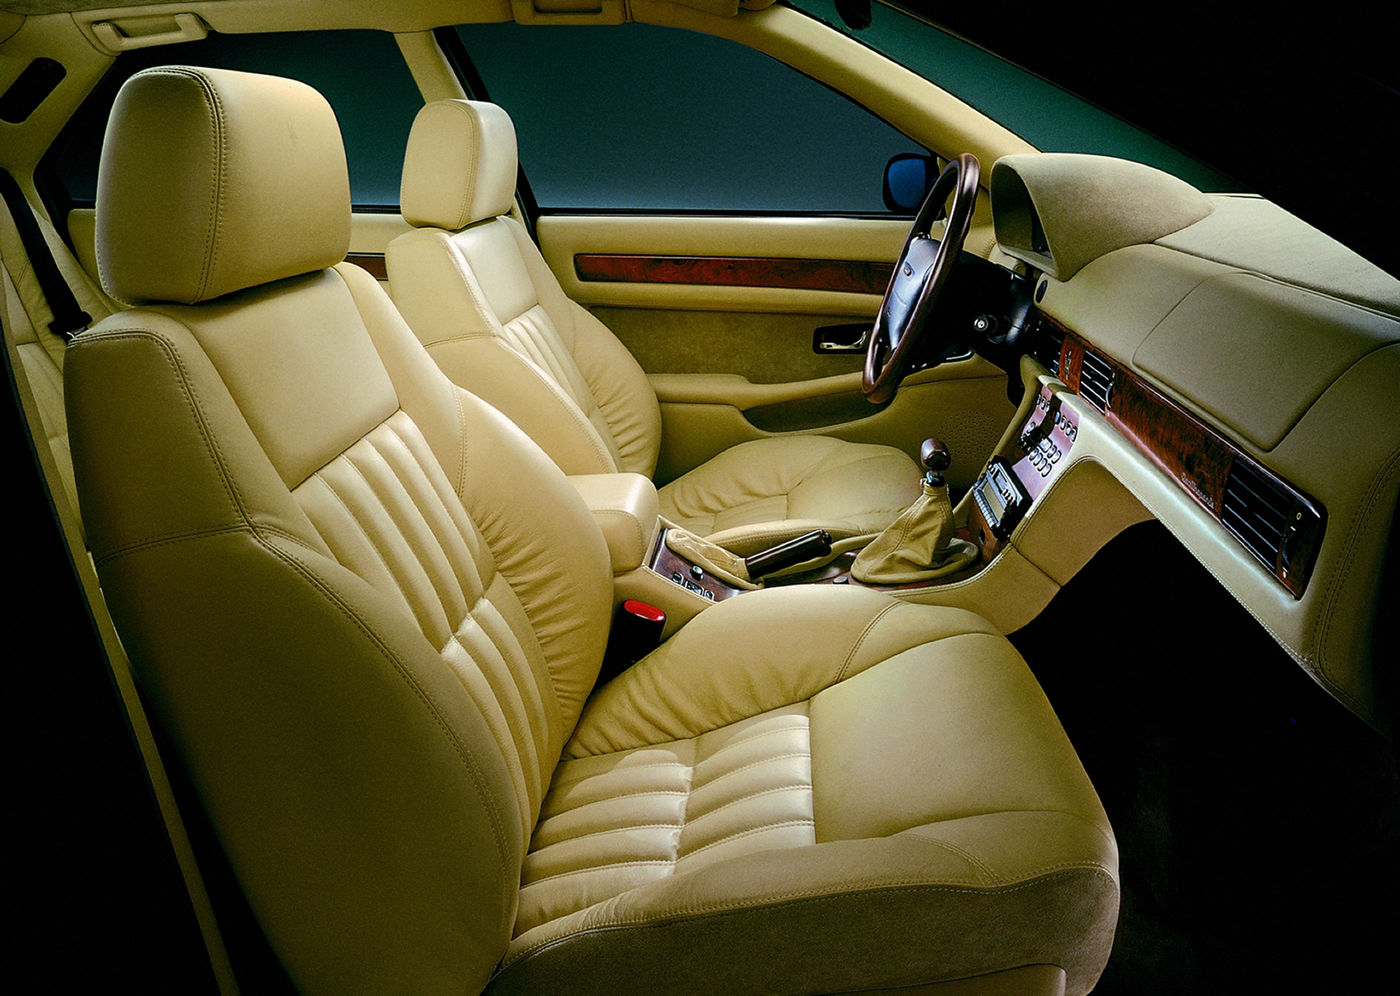 1998 Maserati Quattroporte IV Evoluzione - interior view of the 5-seater sedan